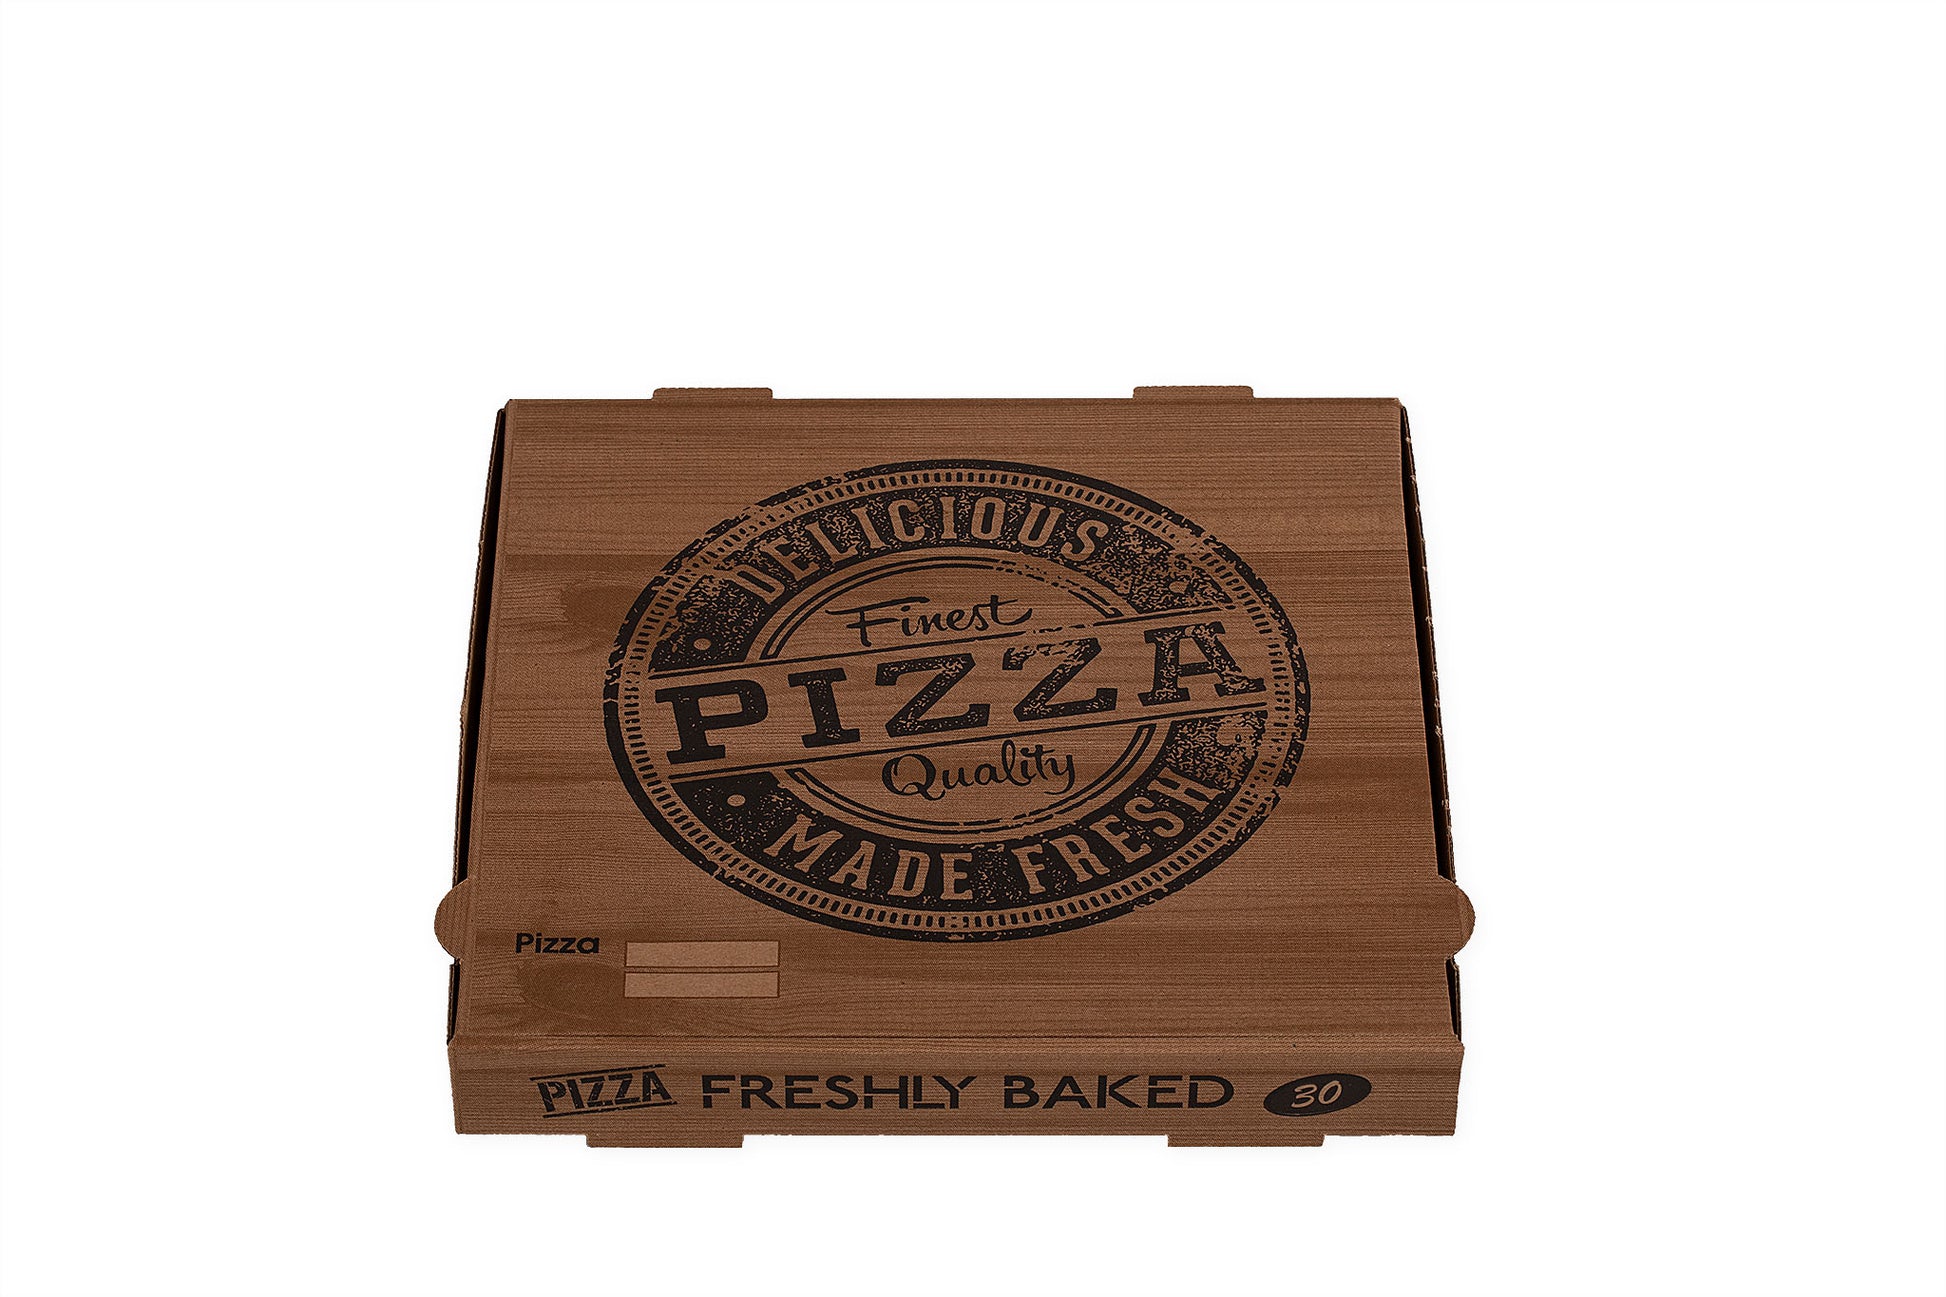 Auf dem Bild ist ein brauner 30er Pizzakarton in der Größe 30 x 30 x 4cm in der Draufsicht zu sehen. Aufgedruckt ist ein Logo welches einem Stempelabdruck ähnelt mit dem Text: "Finest Pizza Quality, Delicious Made Fresh". Vertrieben durch die Malik Verpackungen GmbH Hanau